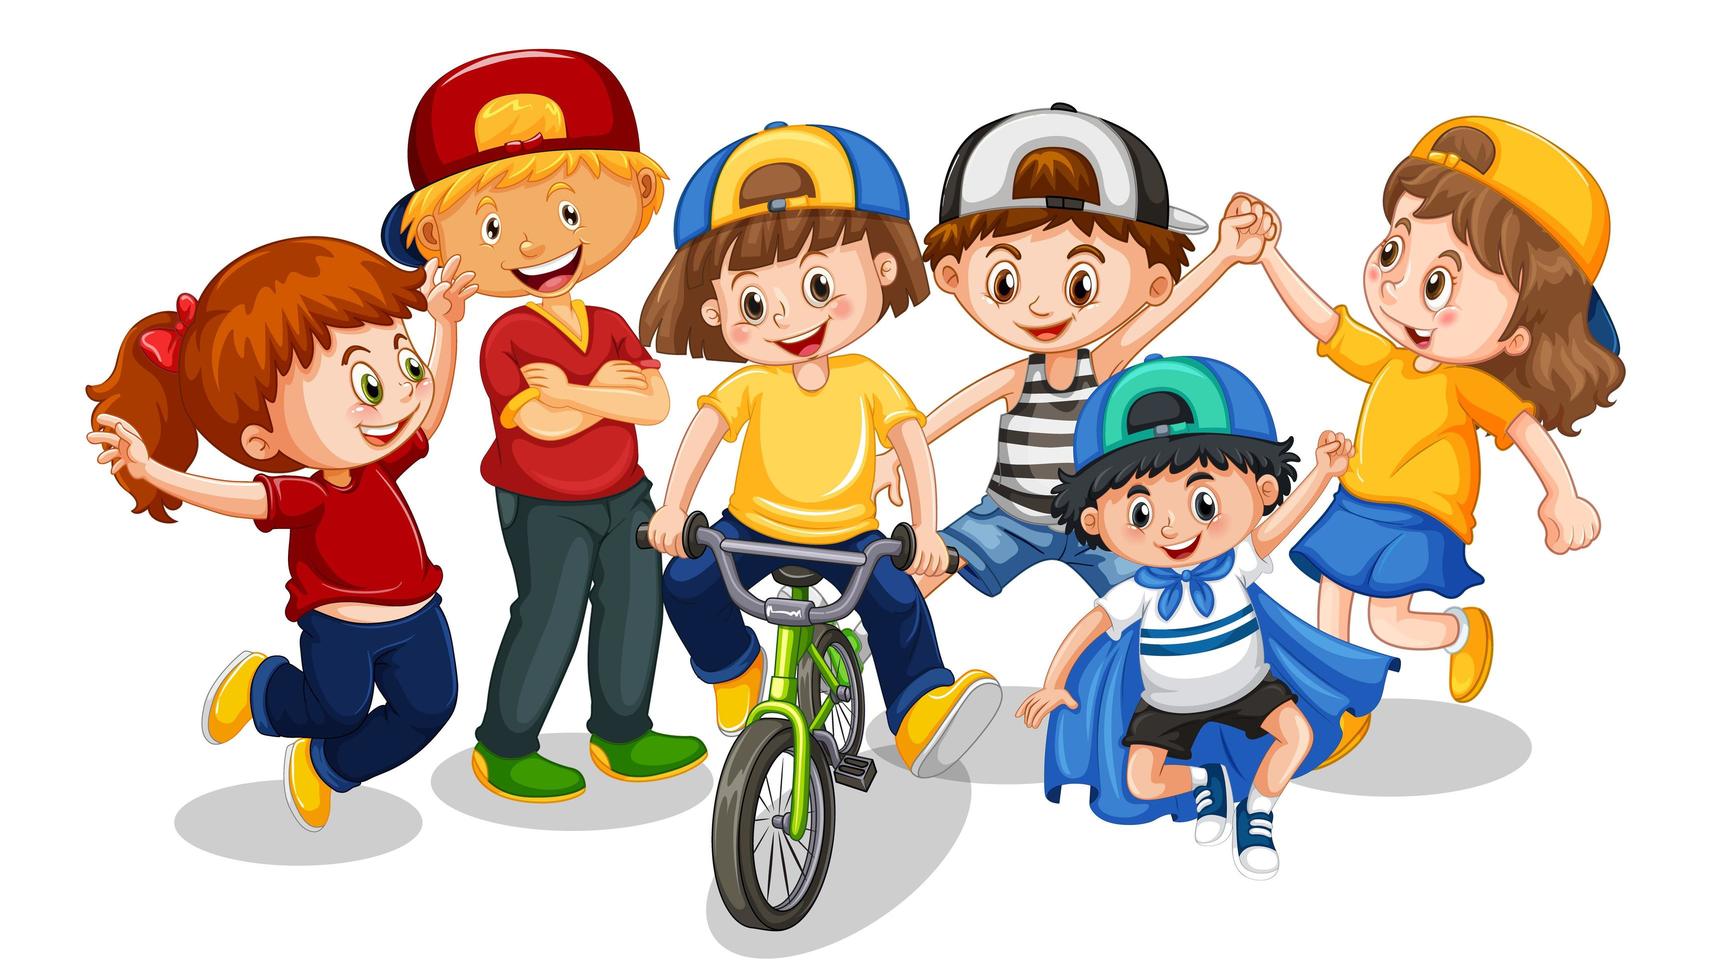 gruppo di bambini piccoli personaggio dei cartoni animati su sfondo bianco vettore